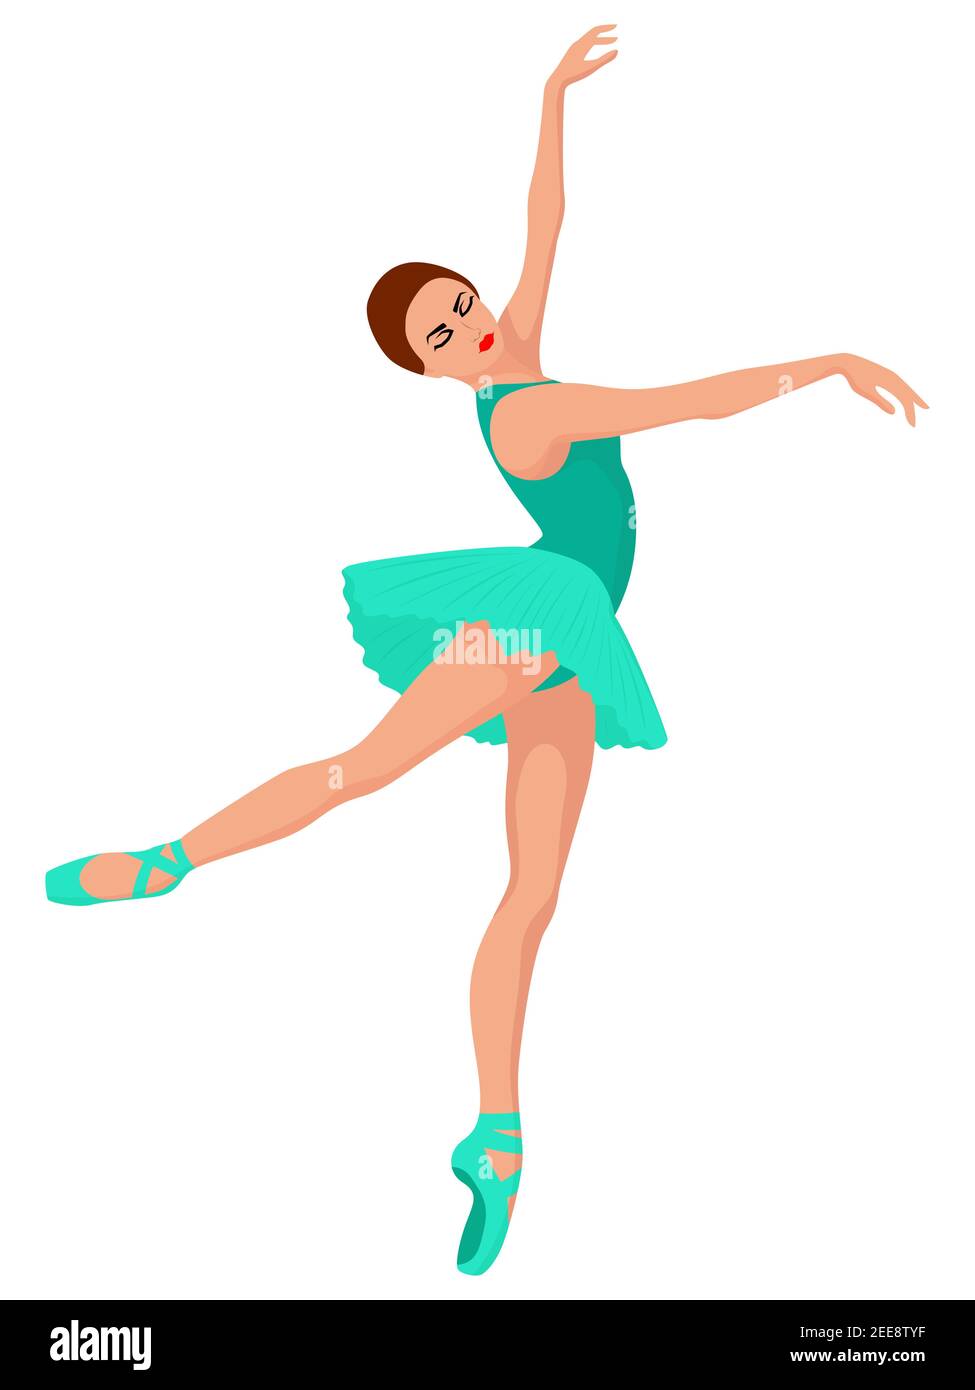 Personaje de bailarina Imágenes recortadas de stock - Página 3 - Alamy